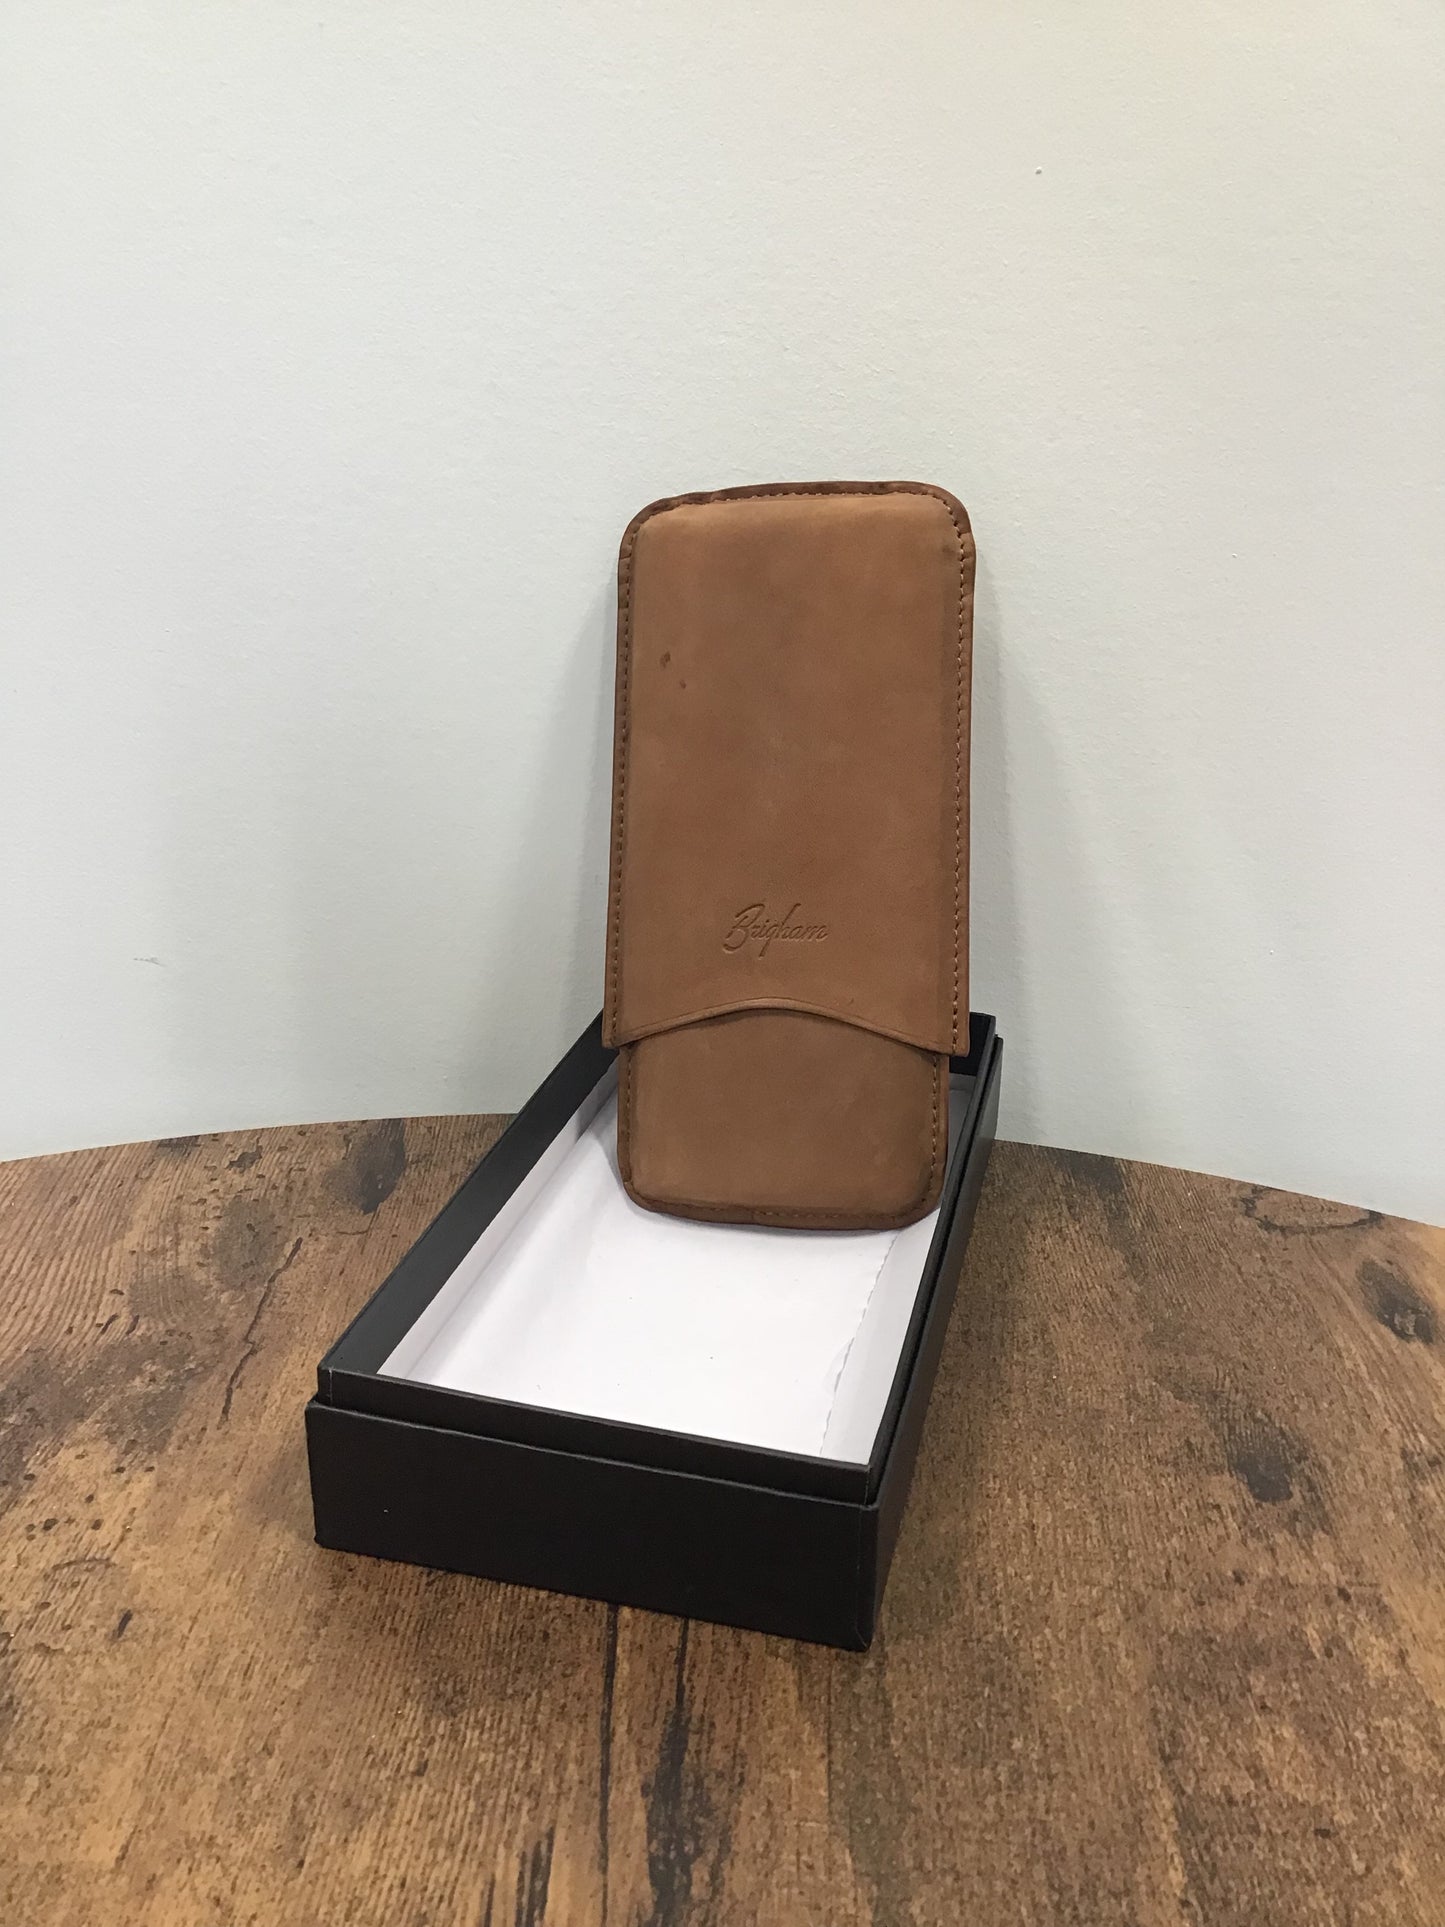 Brigham 3-cigar case